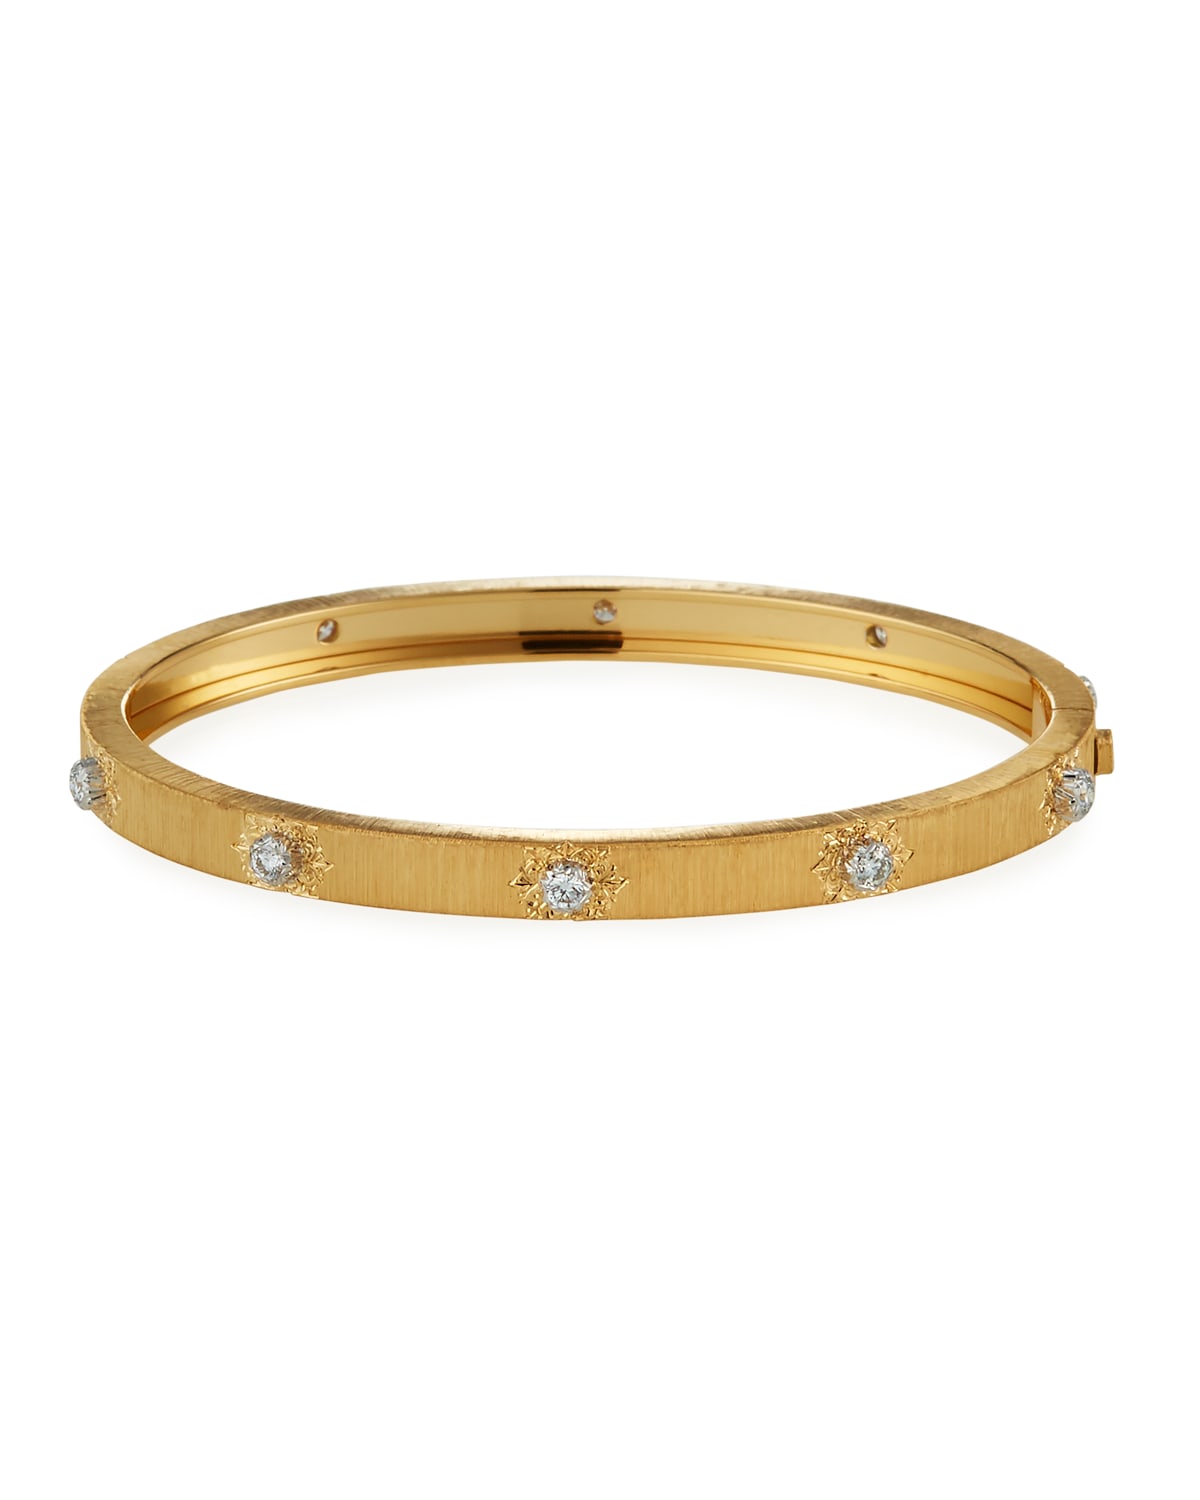 Dominique Cohen 14k Gold Baguette-Diamond Halfway Ring, Size 7 | Neiman ...